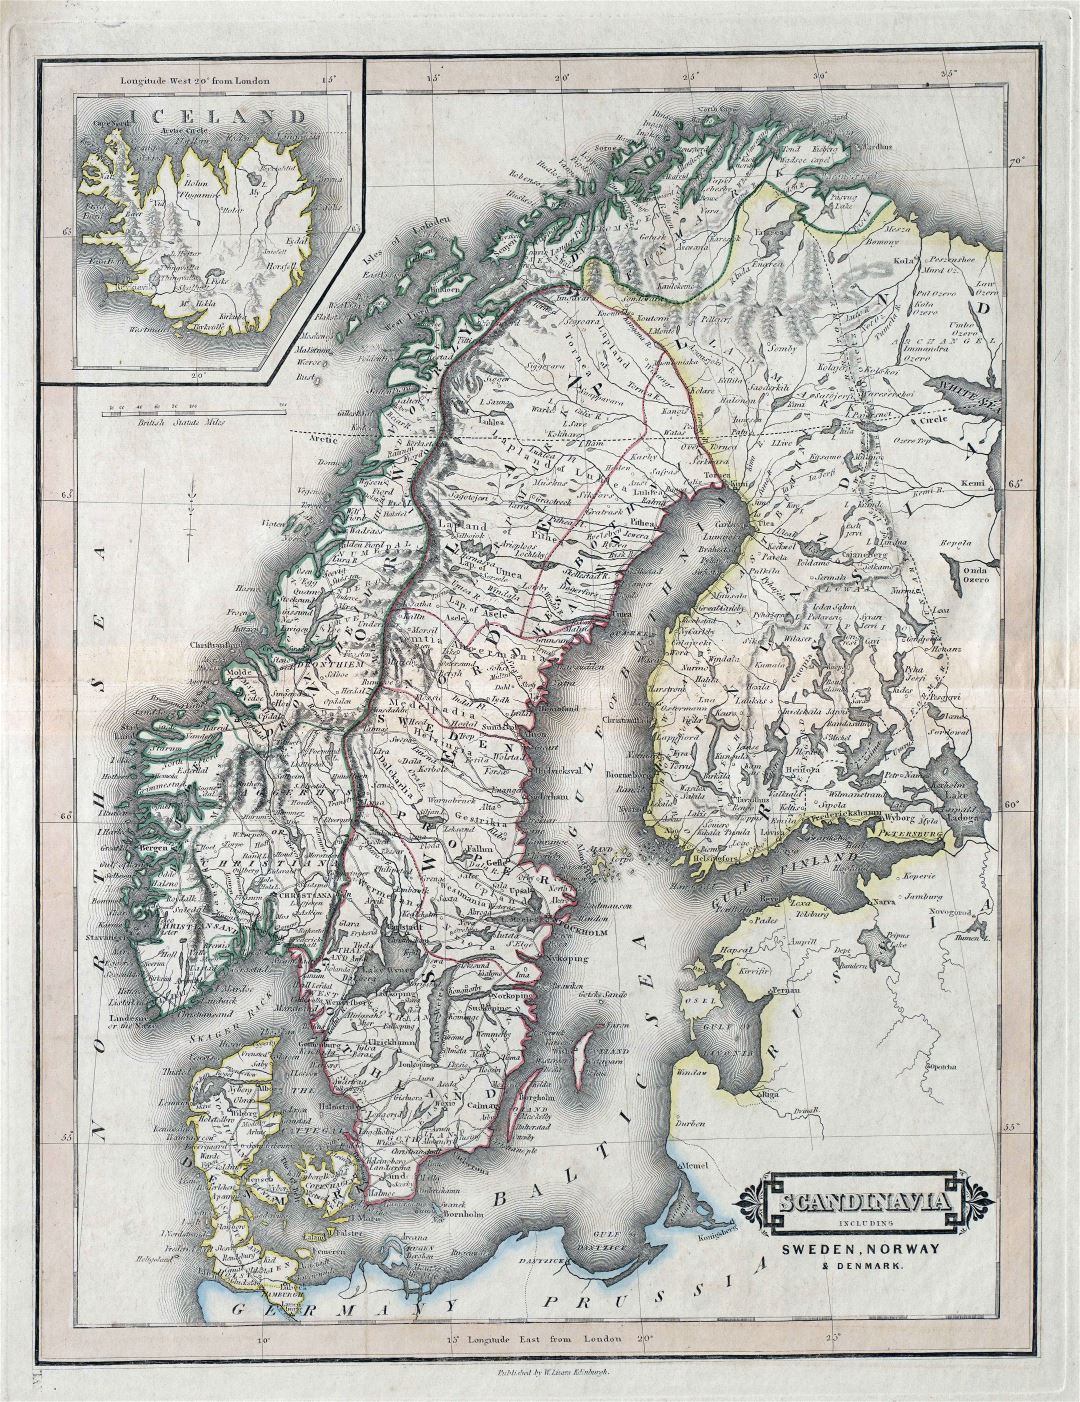 A gran escala antiguo mapa político de Suecia, Noruega y Dinamarca con carreteras y ciudades